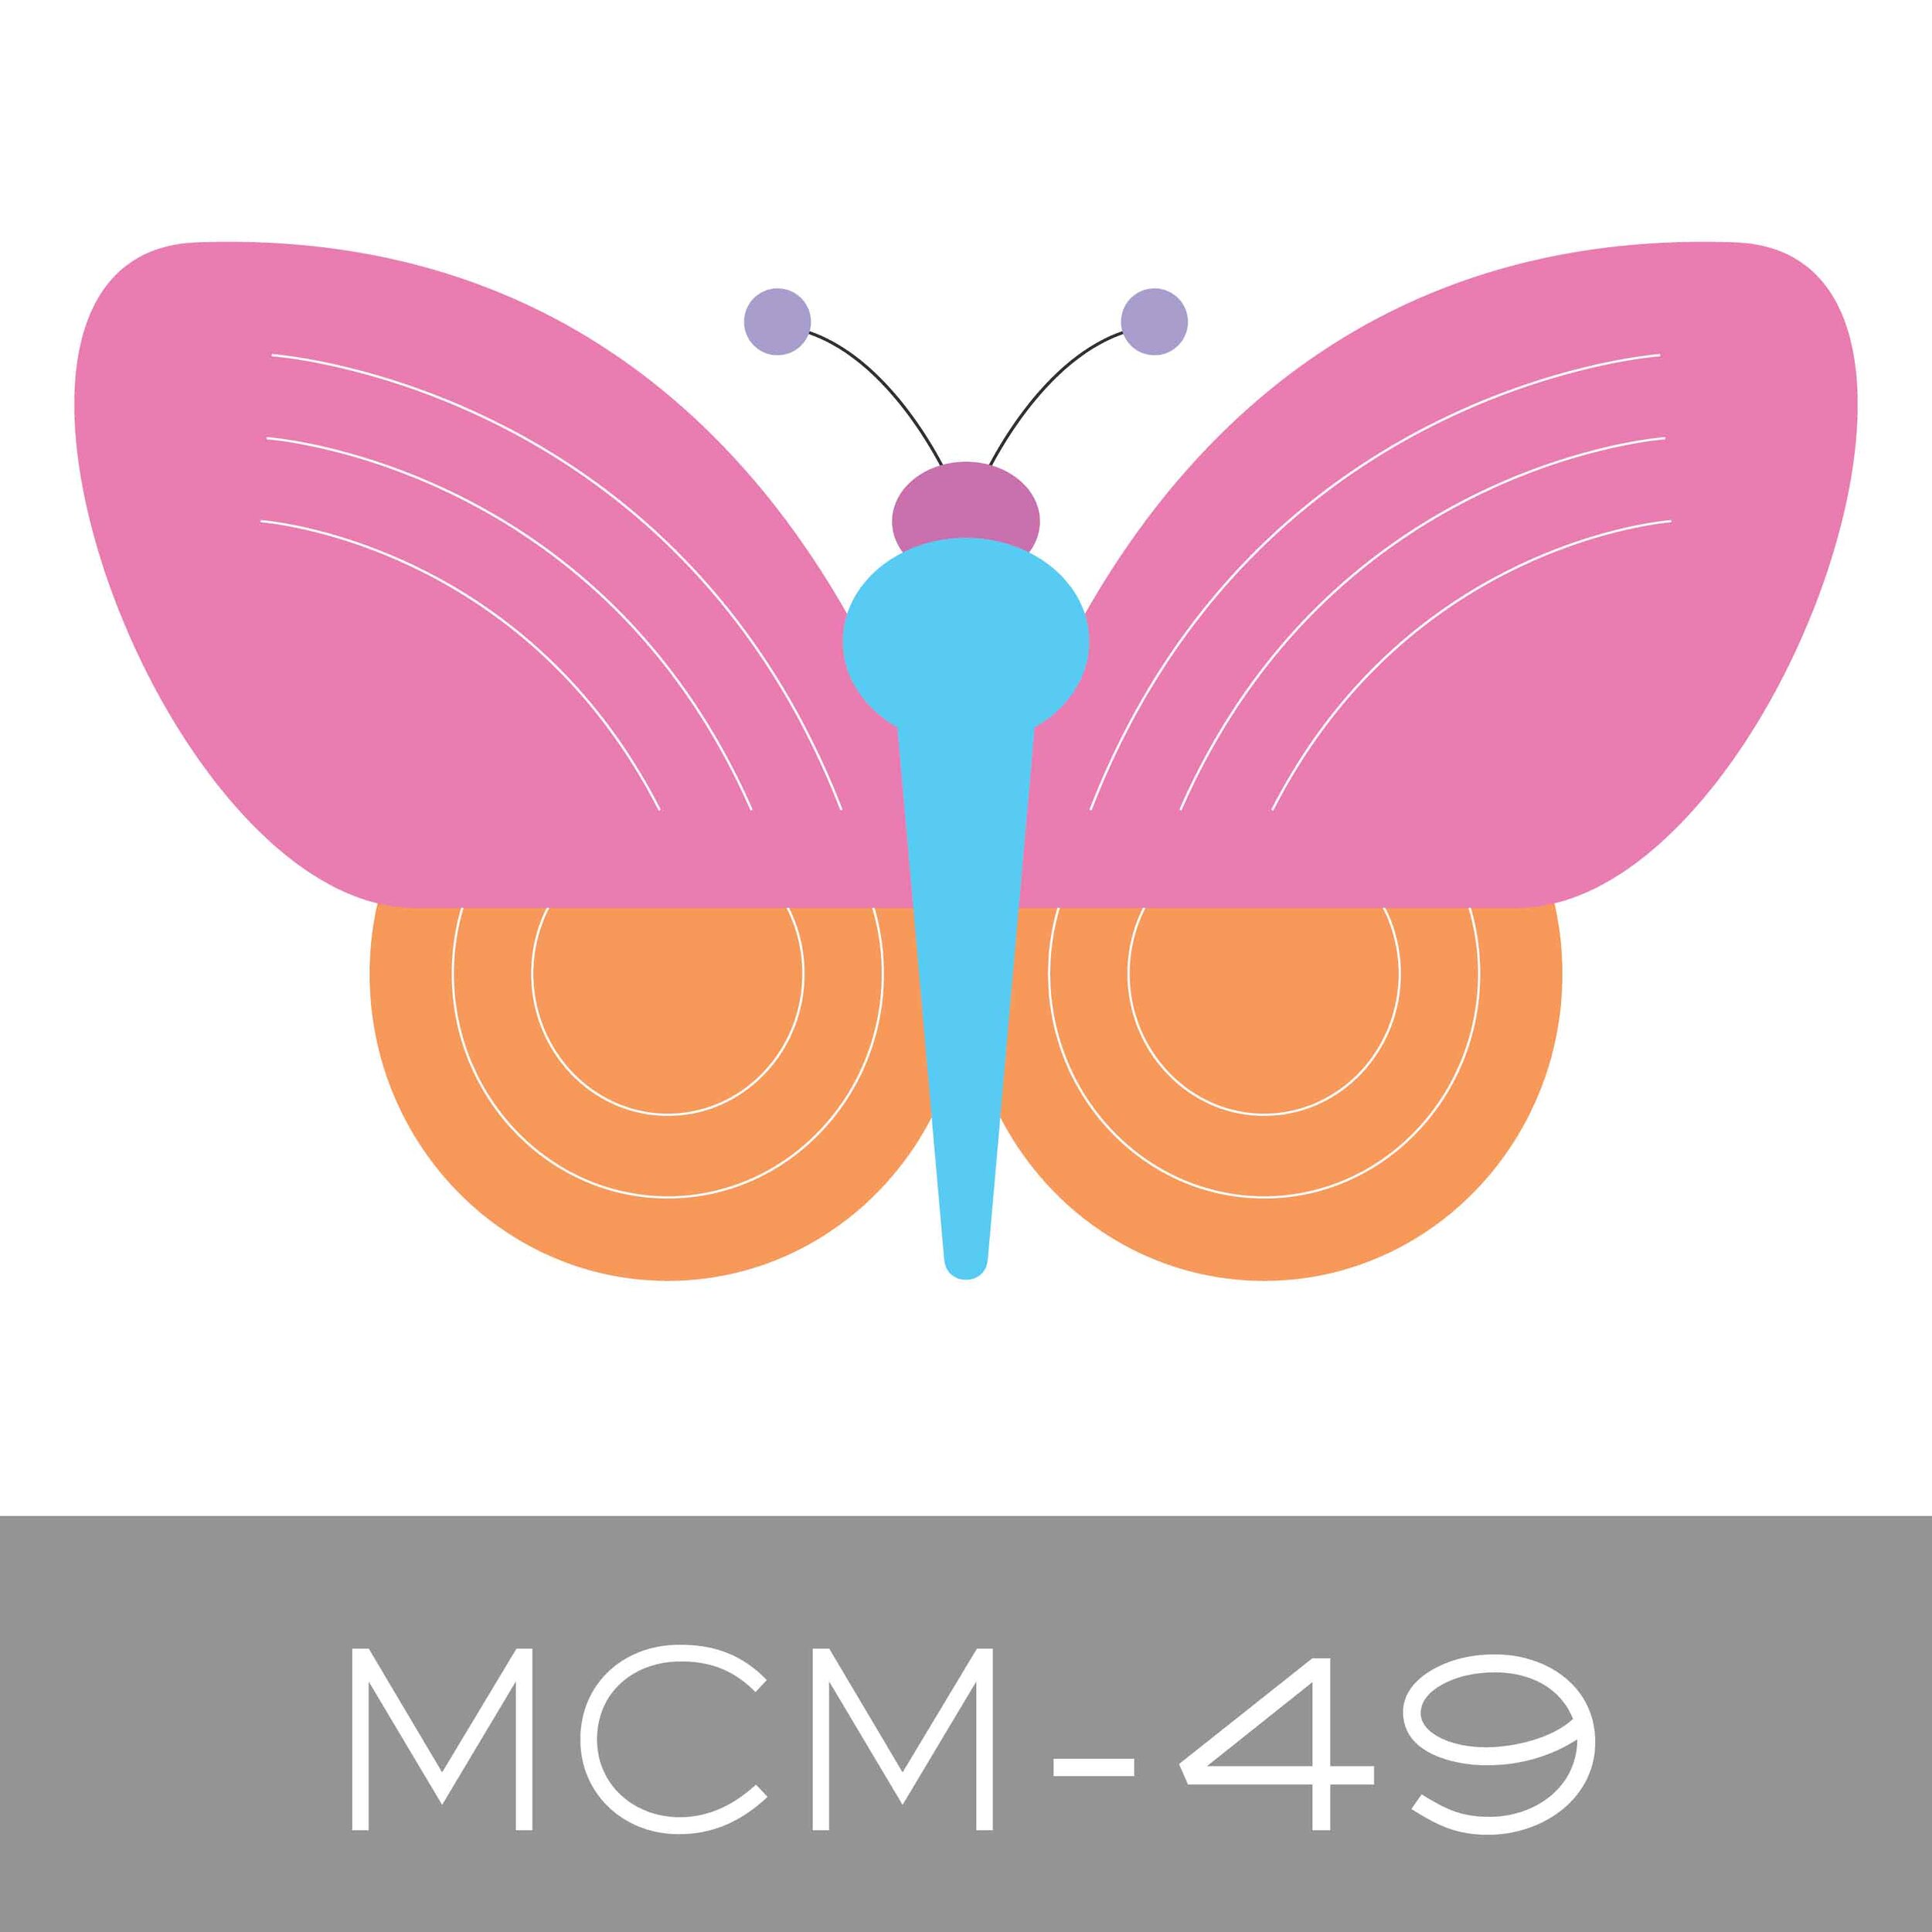 MCM-49.jpg